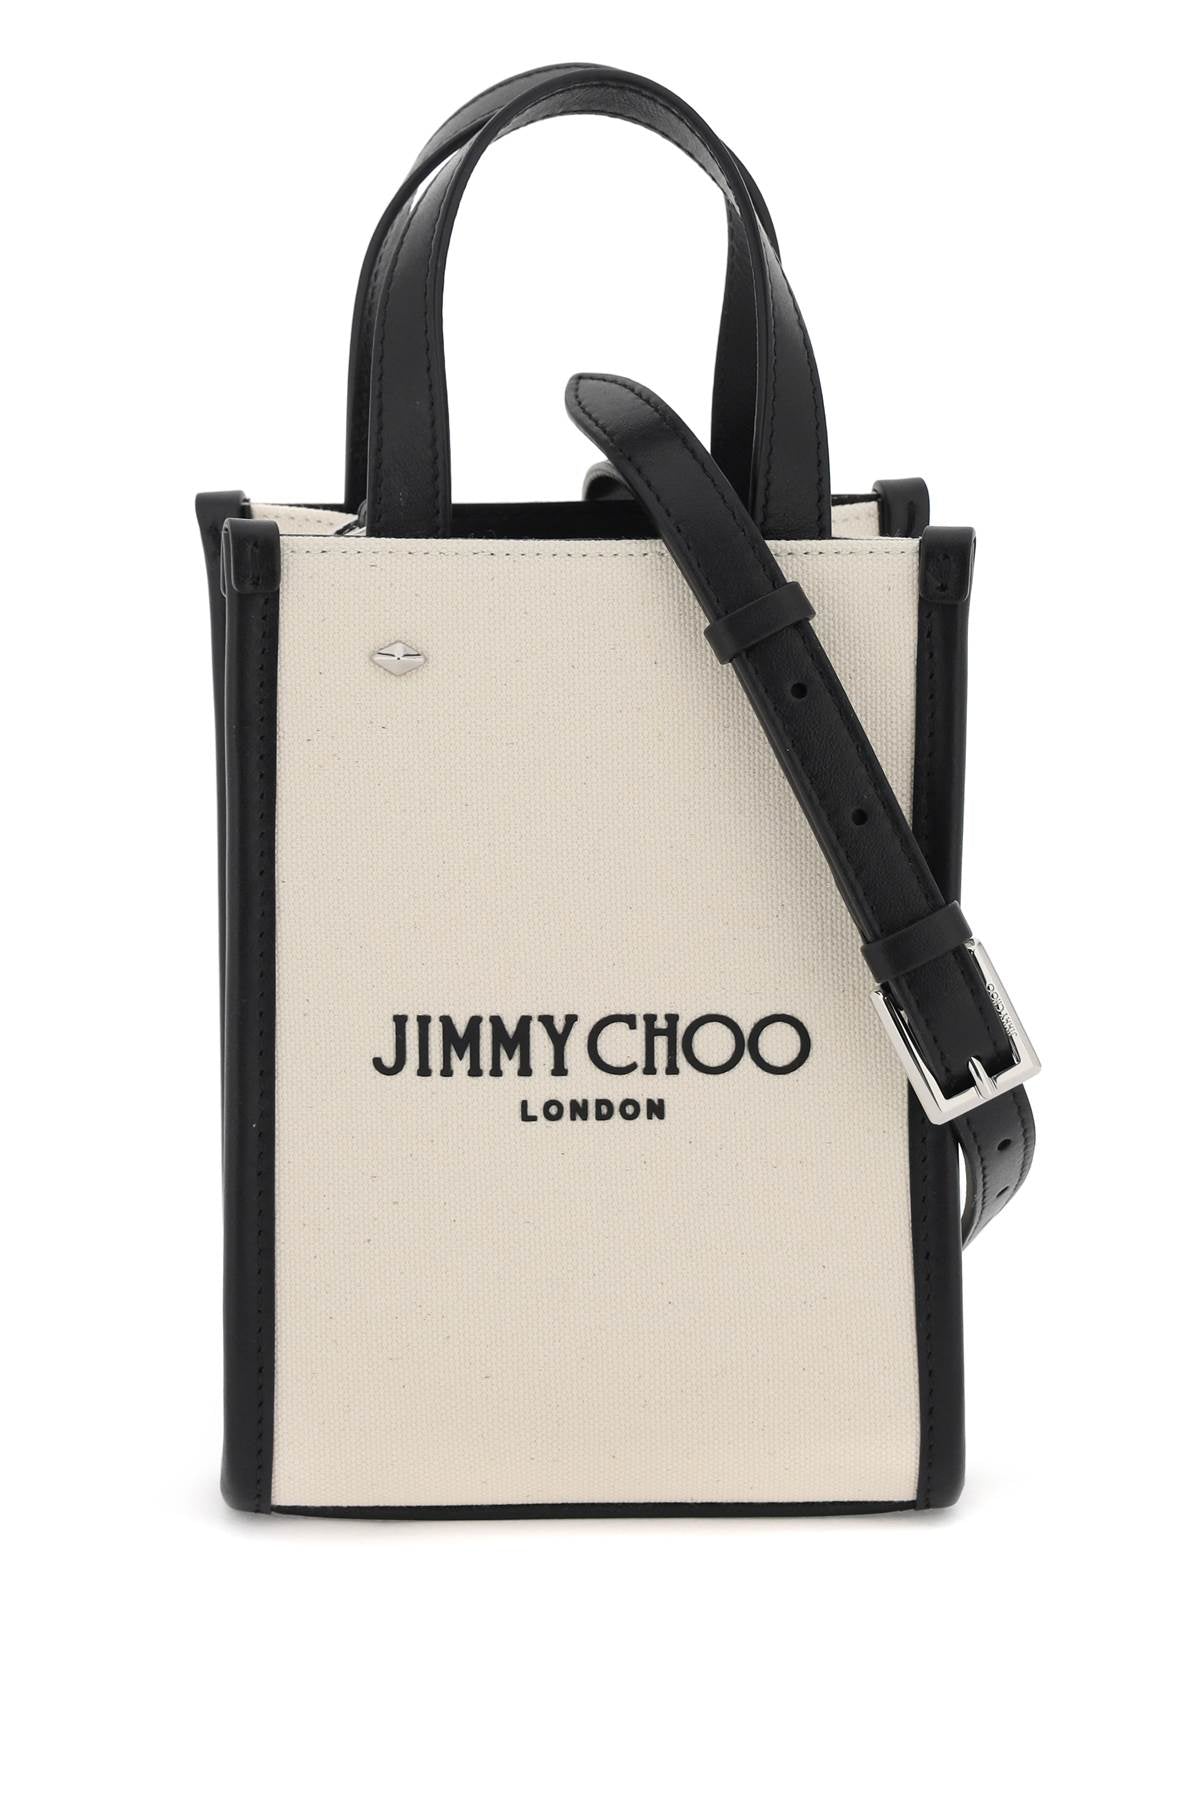 Jimmy choo n/s mini tote bag-0